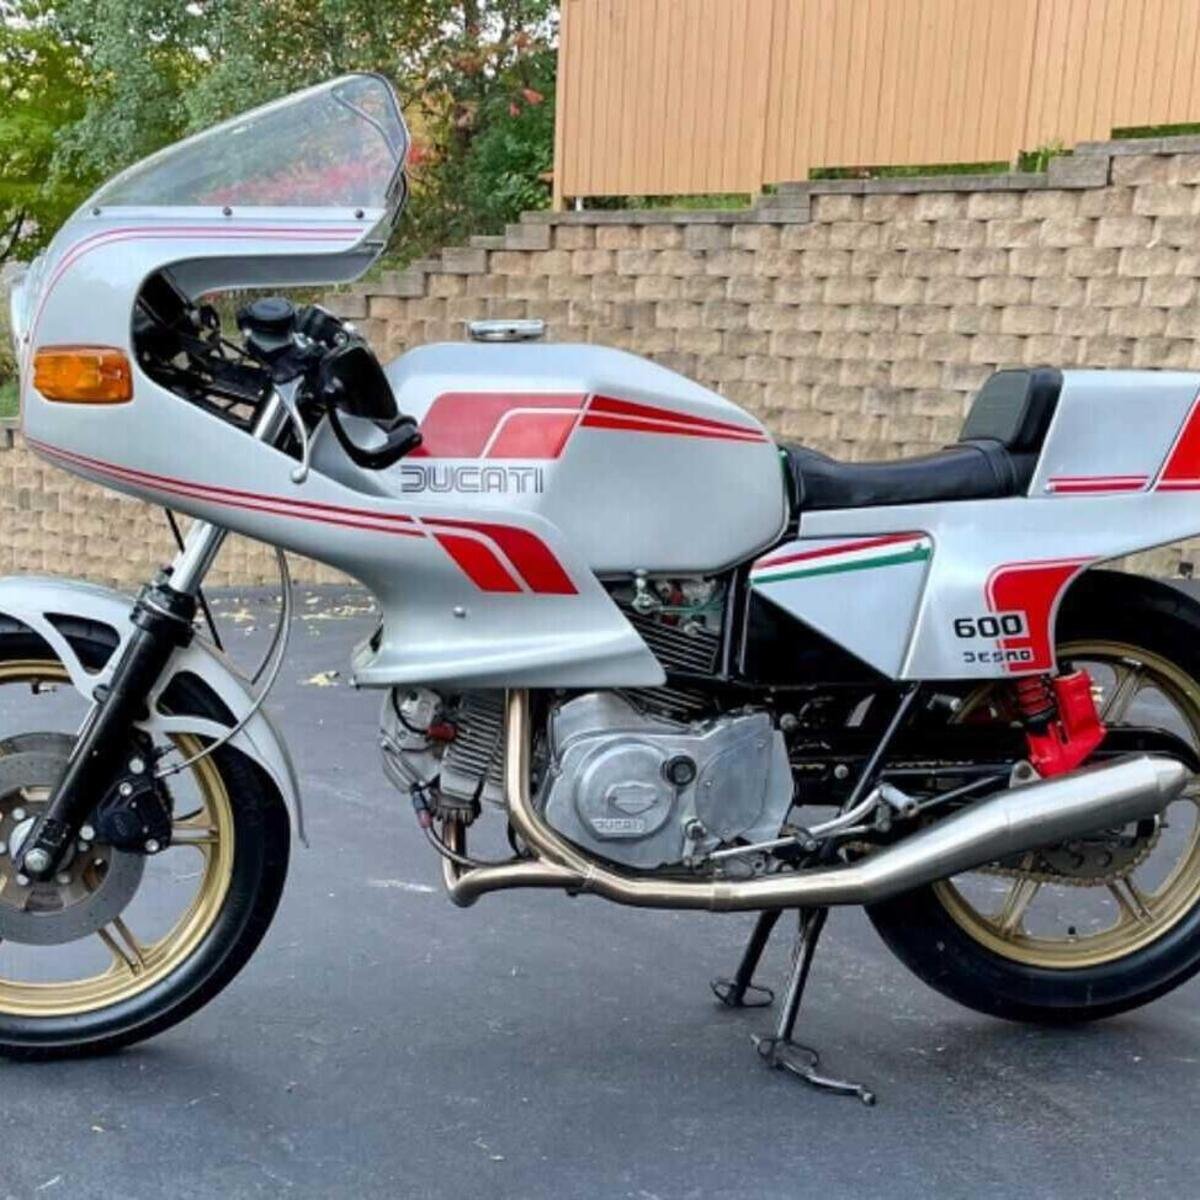 Ducati Pantah 600 (1980 - 84)